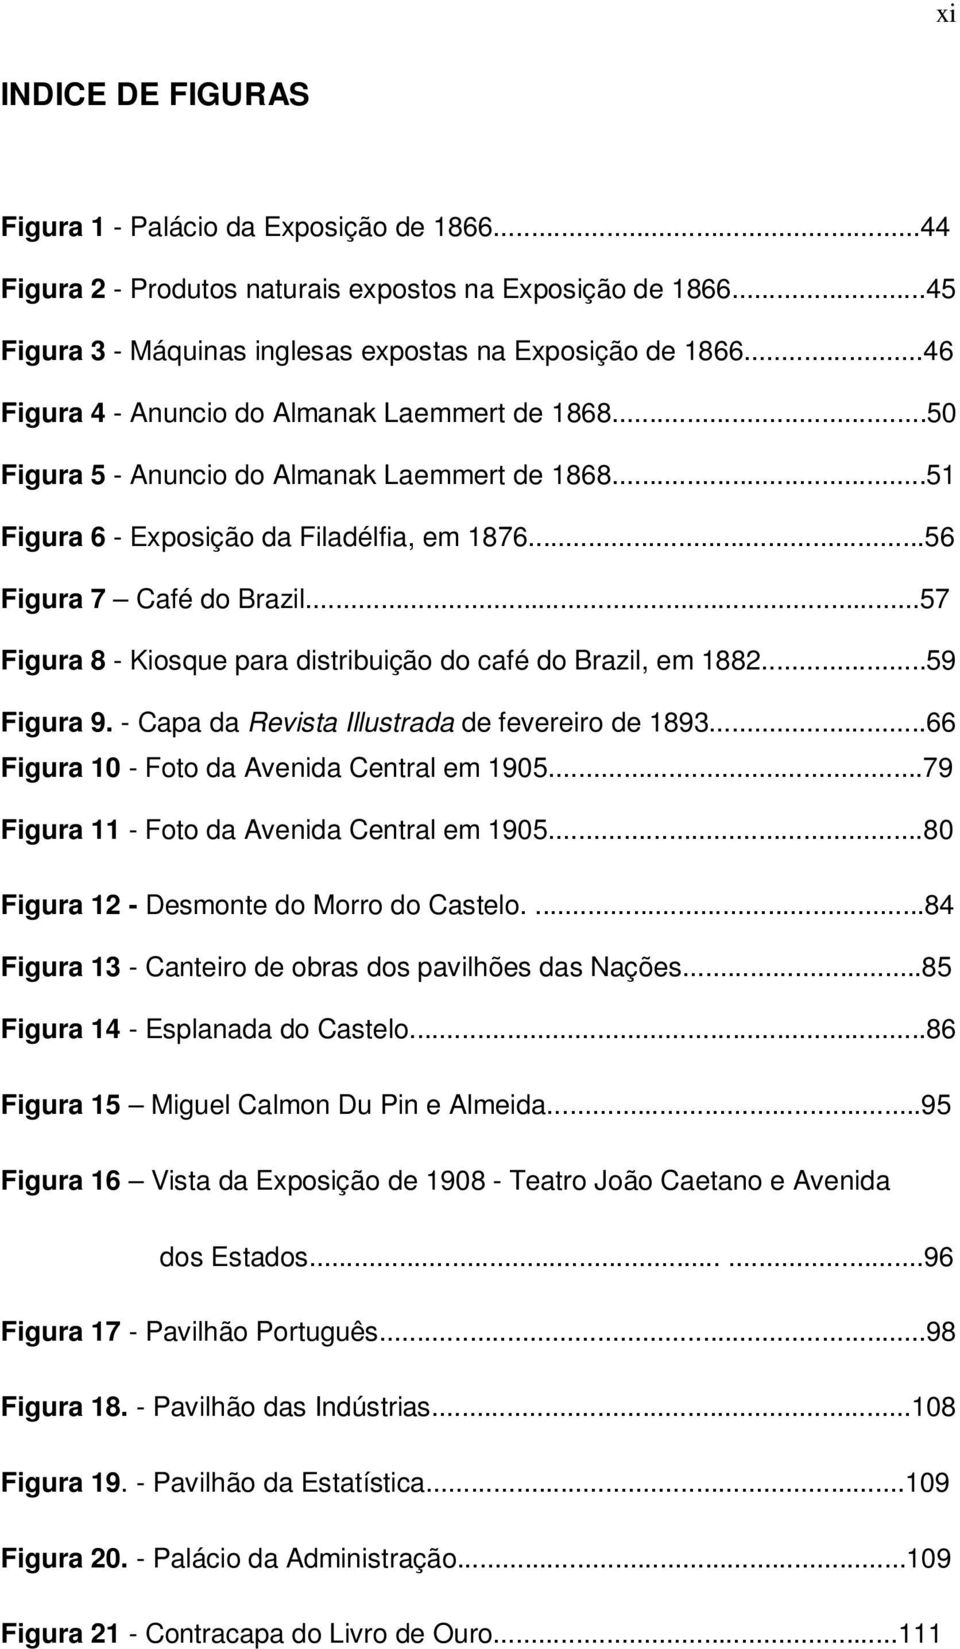 ..57 Figura 8 - Kiosque para distribuição do café do Brazil, em 1882...59 Figura 9. - Capa da Revista Illustrada de fevereiro de 1893...66 Figura 10 - Foto da Avenida Central em 1905.